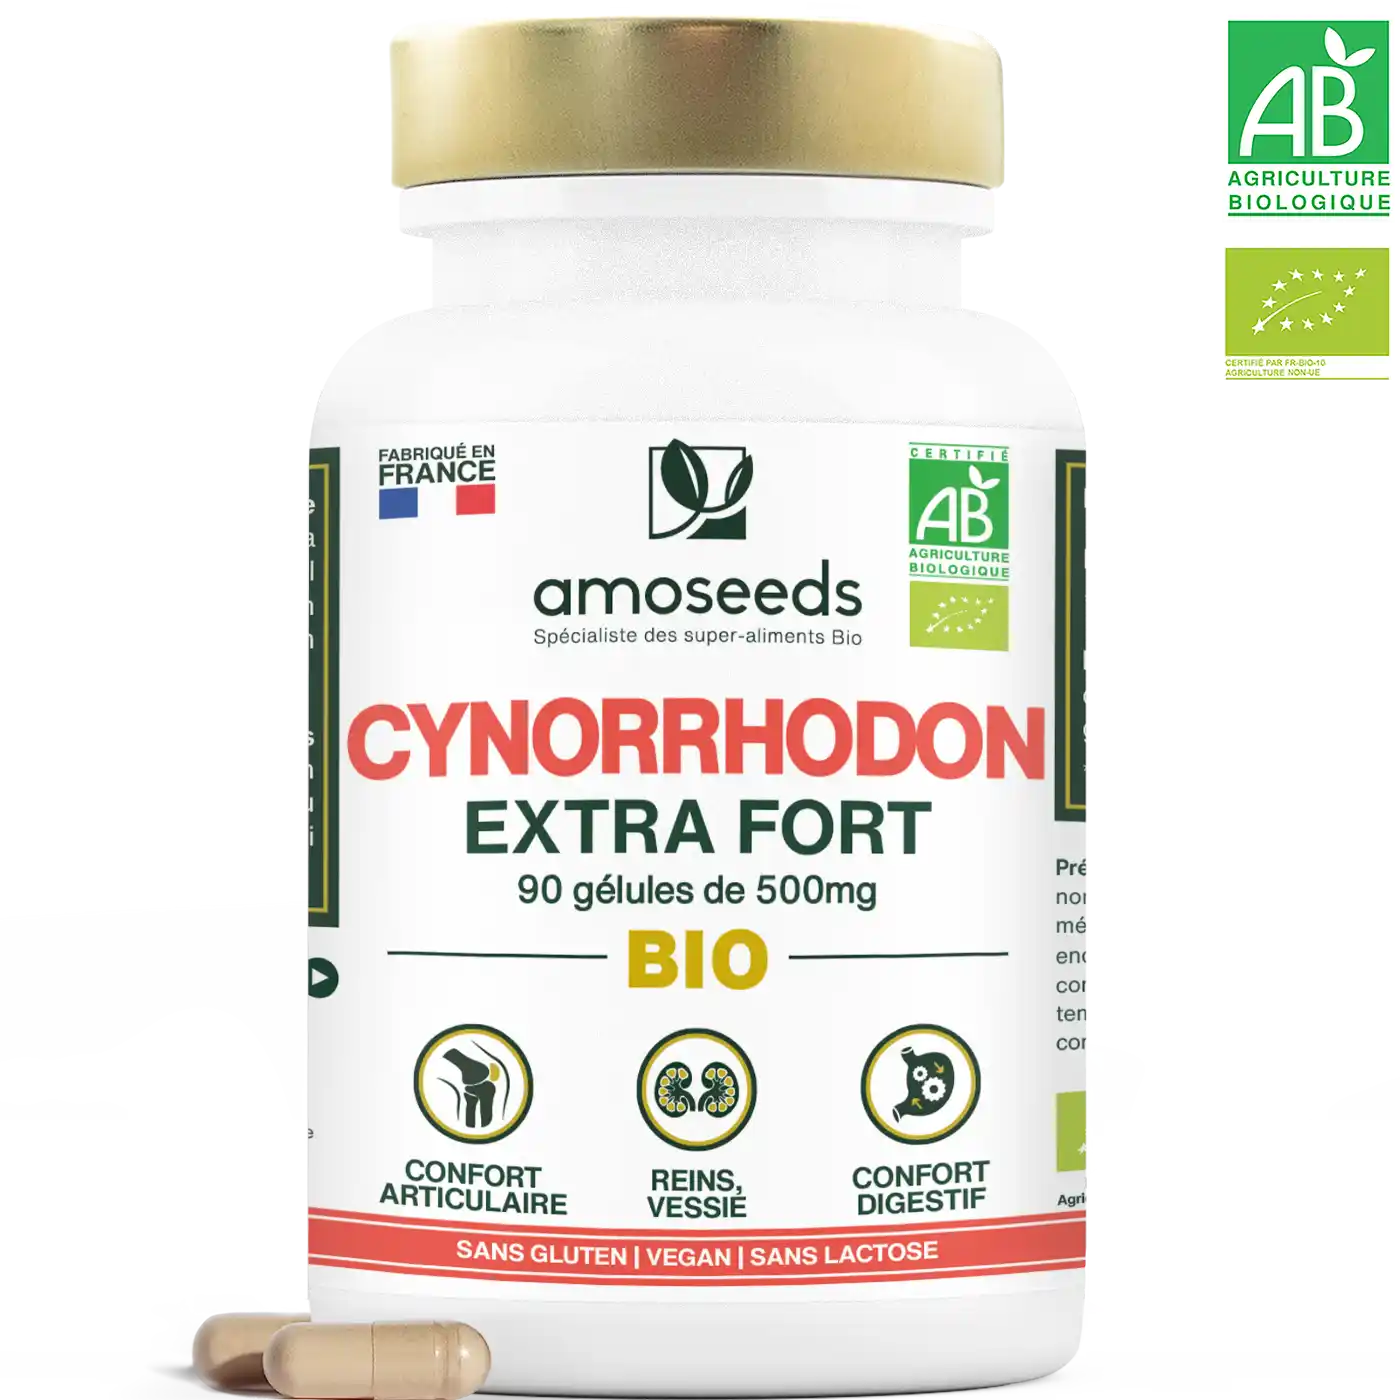 Cynorrhodon bio gelules amoseeds specialiste des super aliments bio,